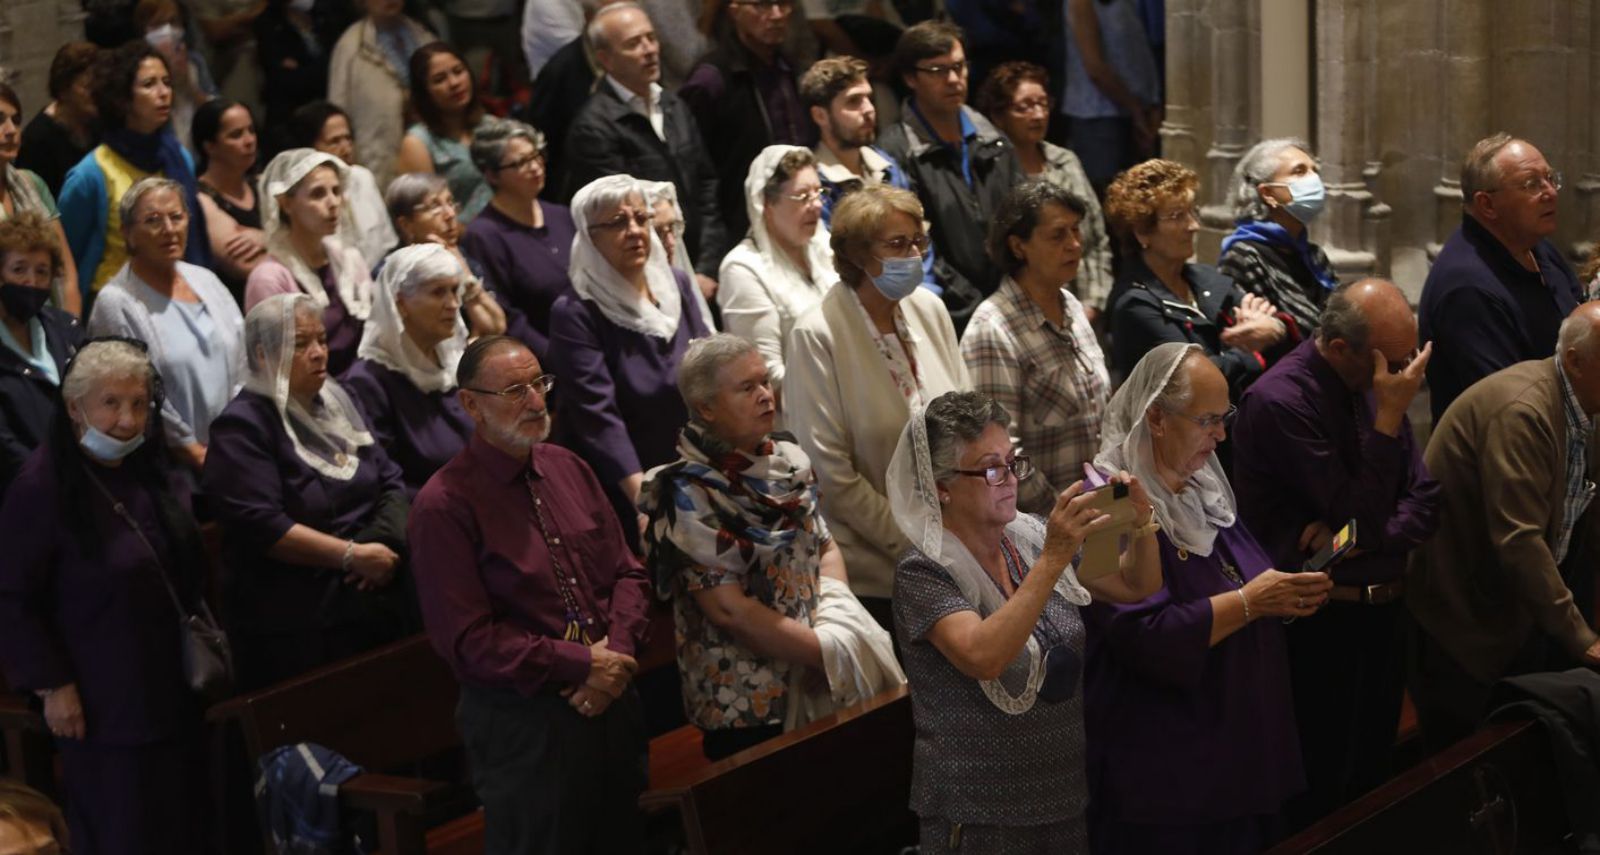 Los bancos de la Catedral, llenos, con varias asistentes portando mantilla blanca durante la misa. | Luisma Murias